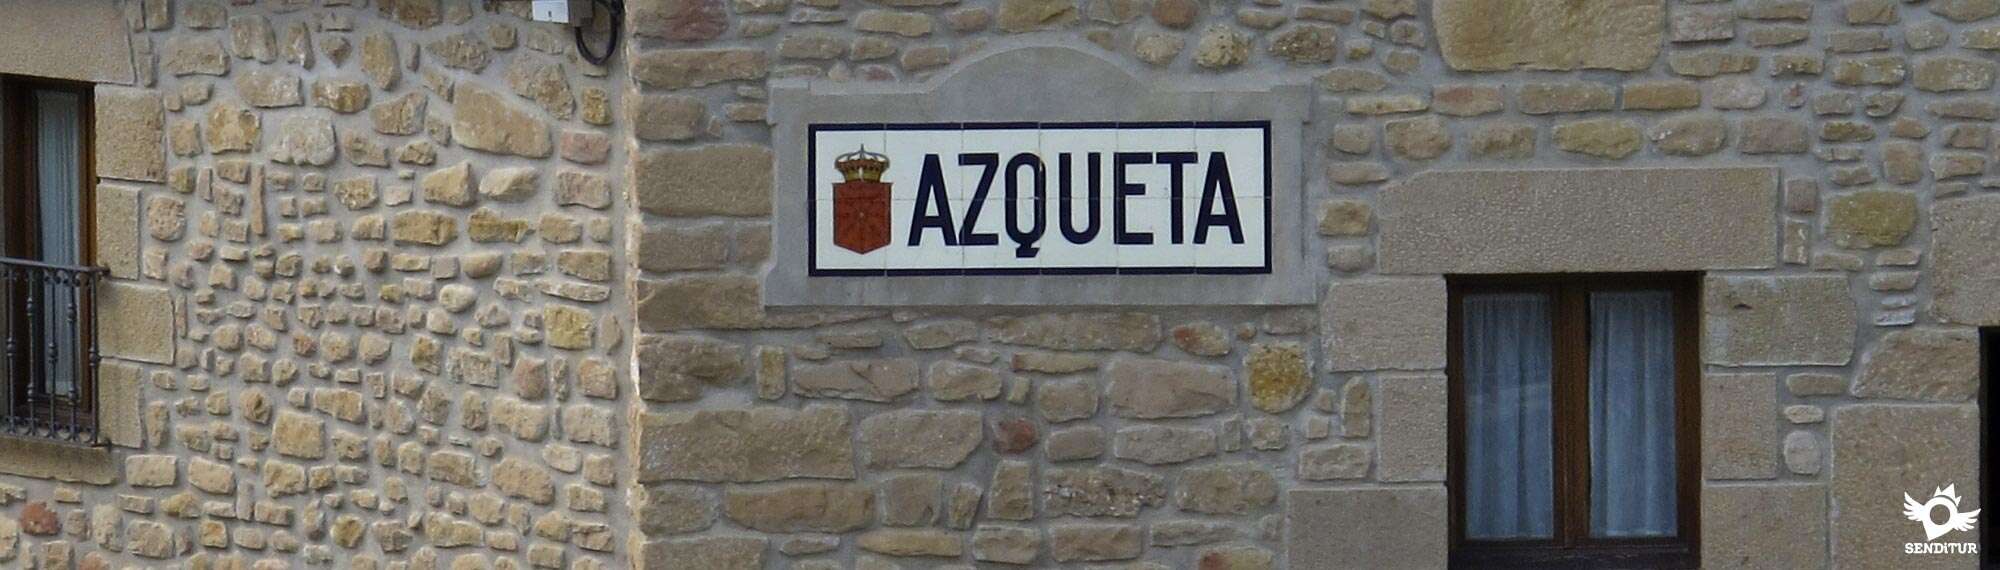 Azqueta